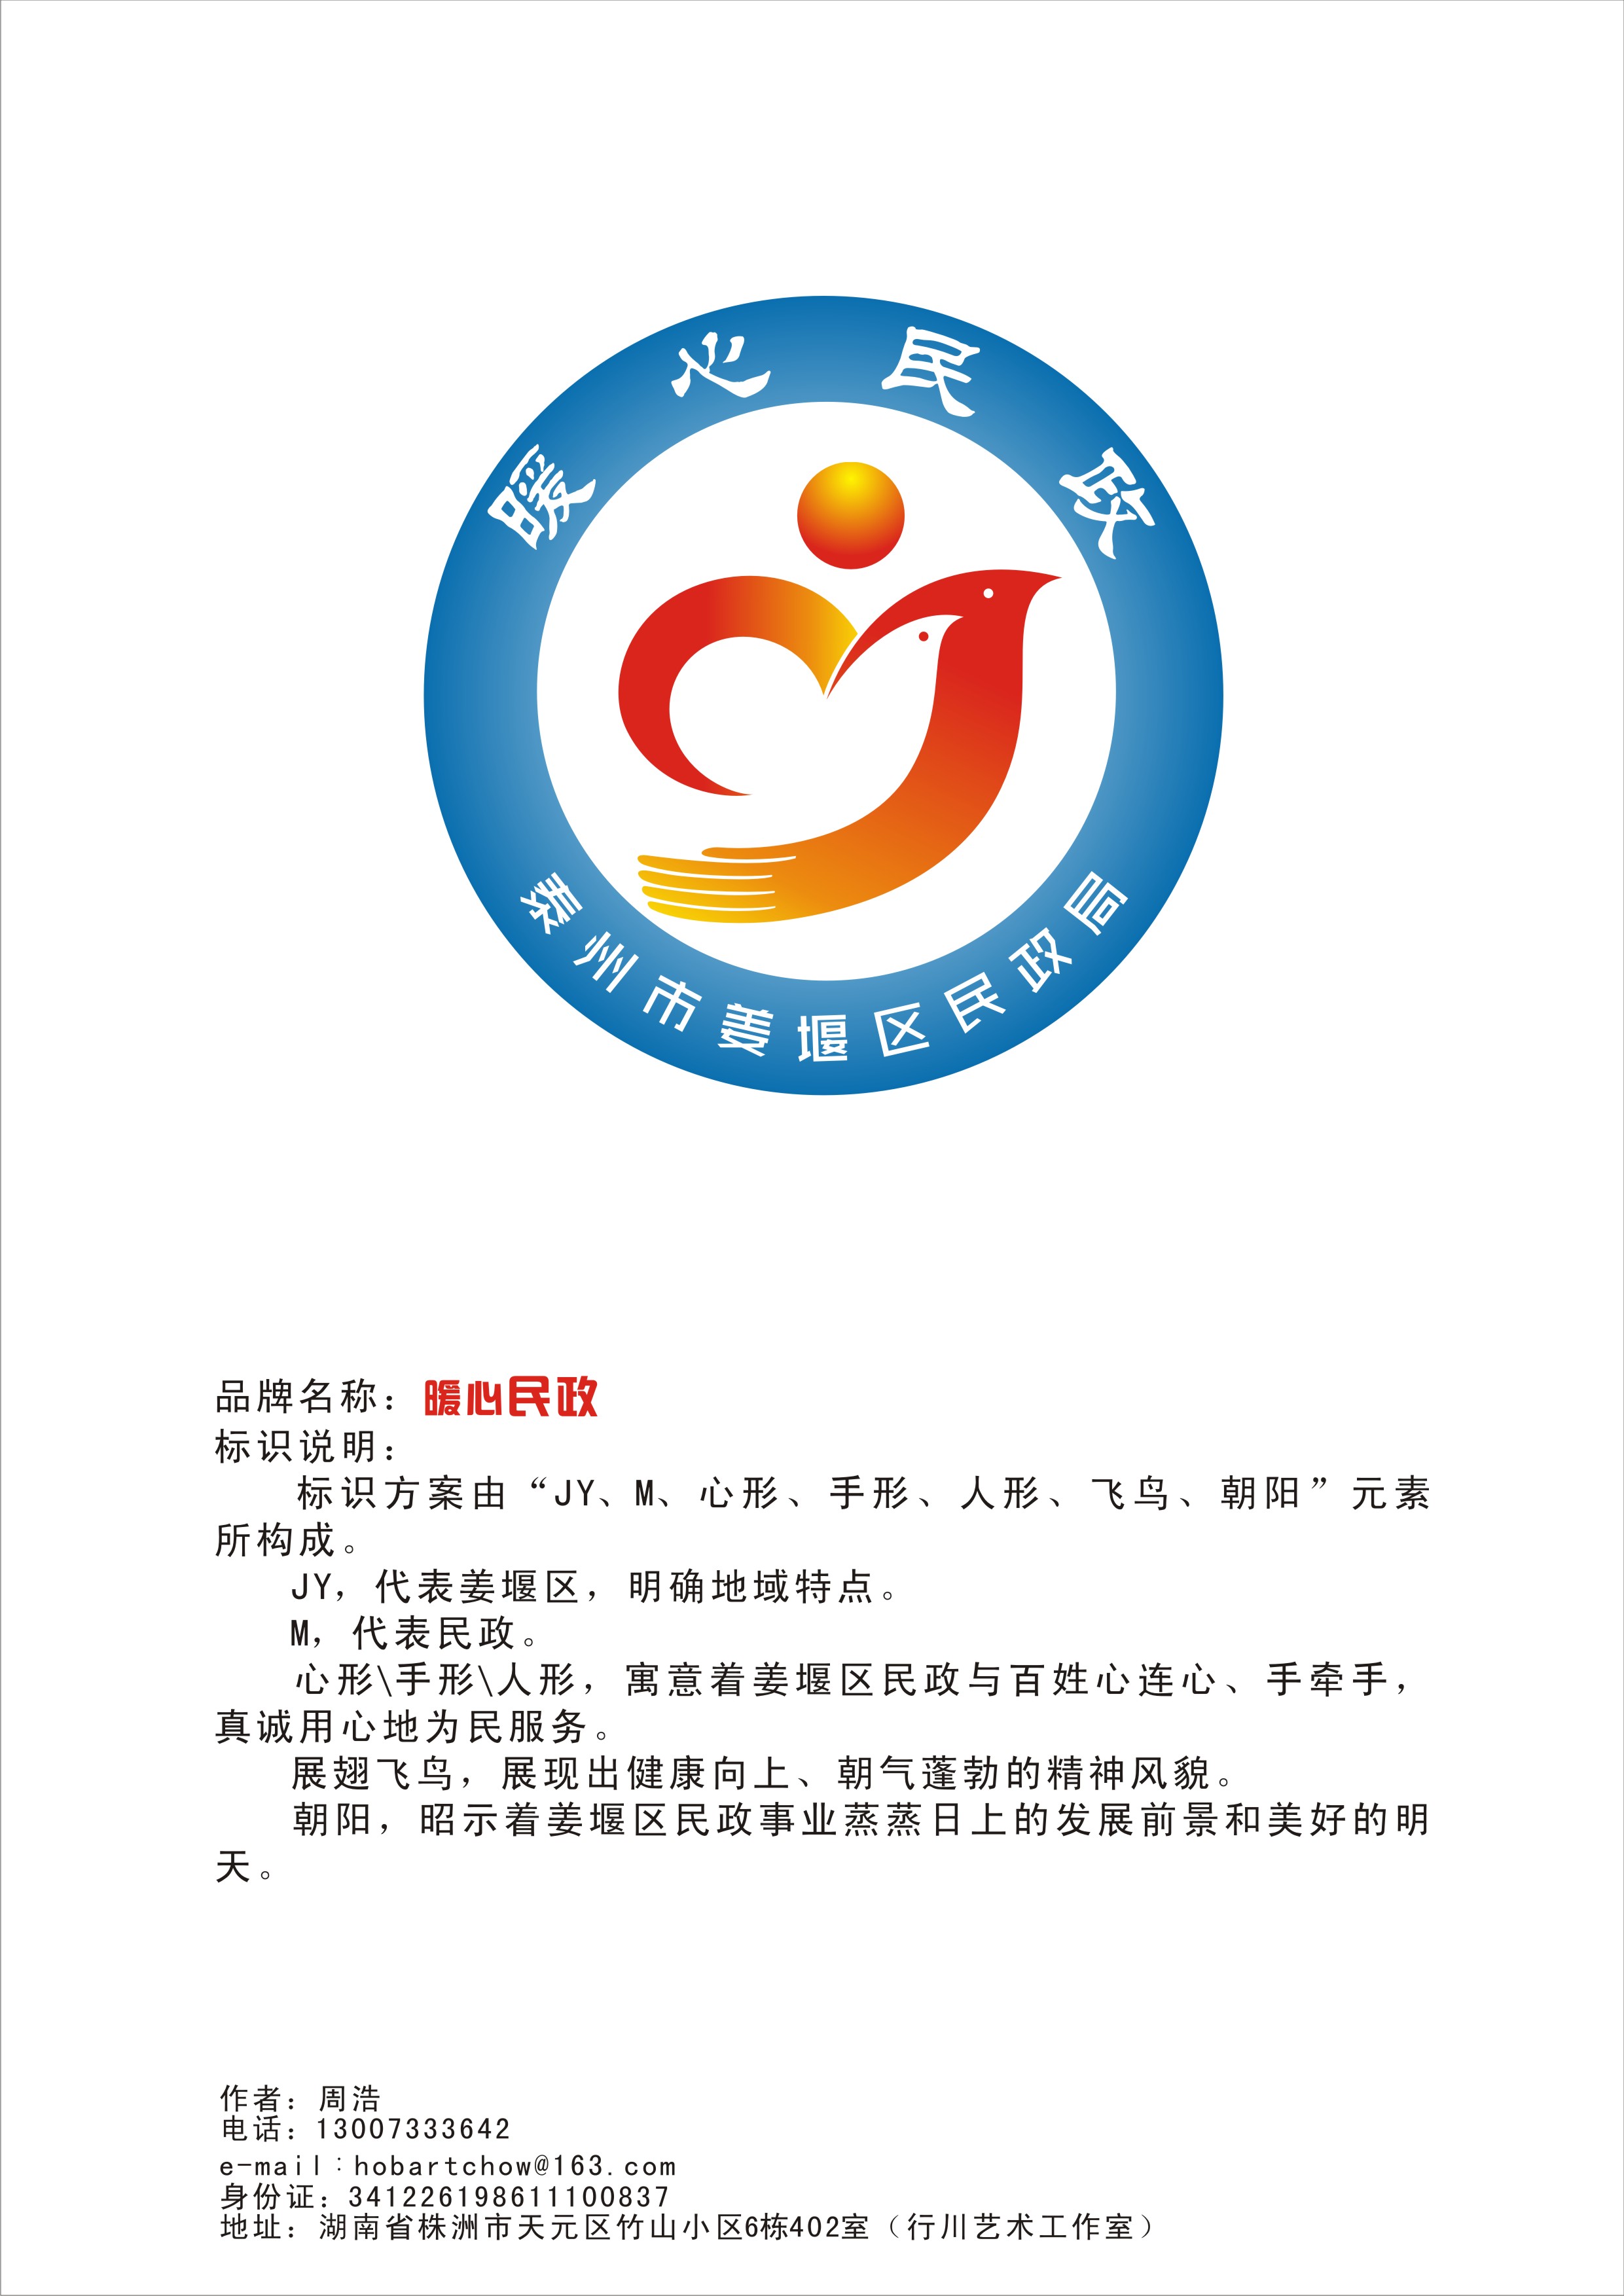 泰州市姜堰区民政局机关服务品牌名称及形象标识入围作品公示